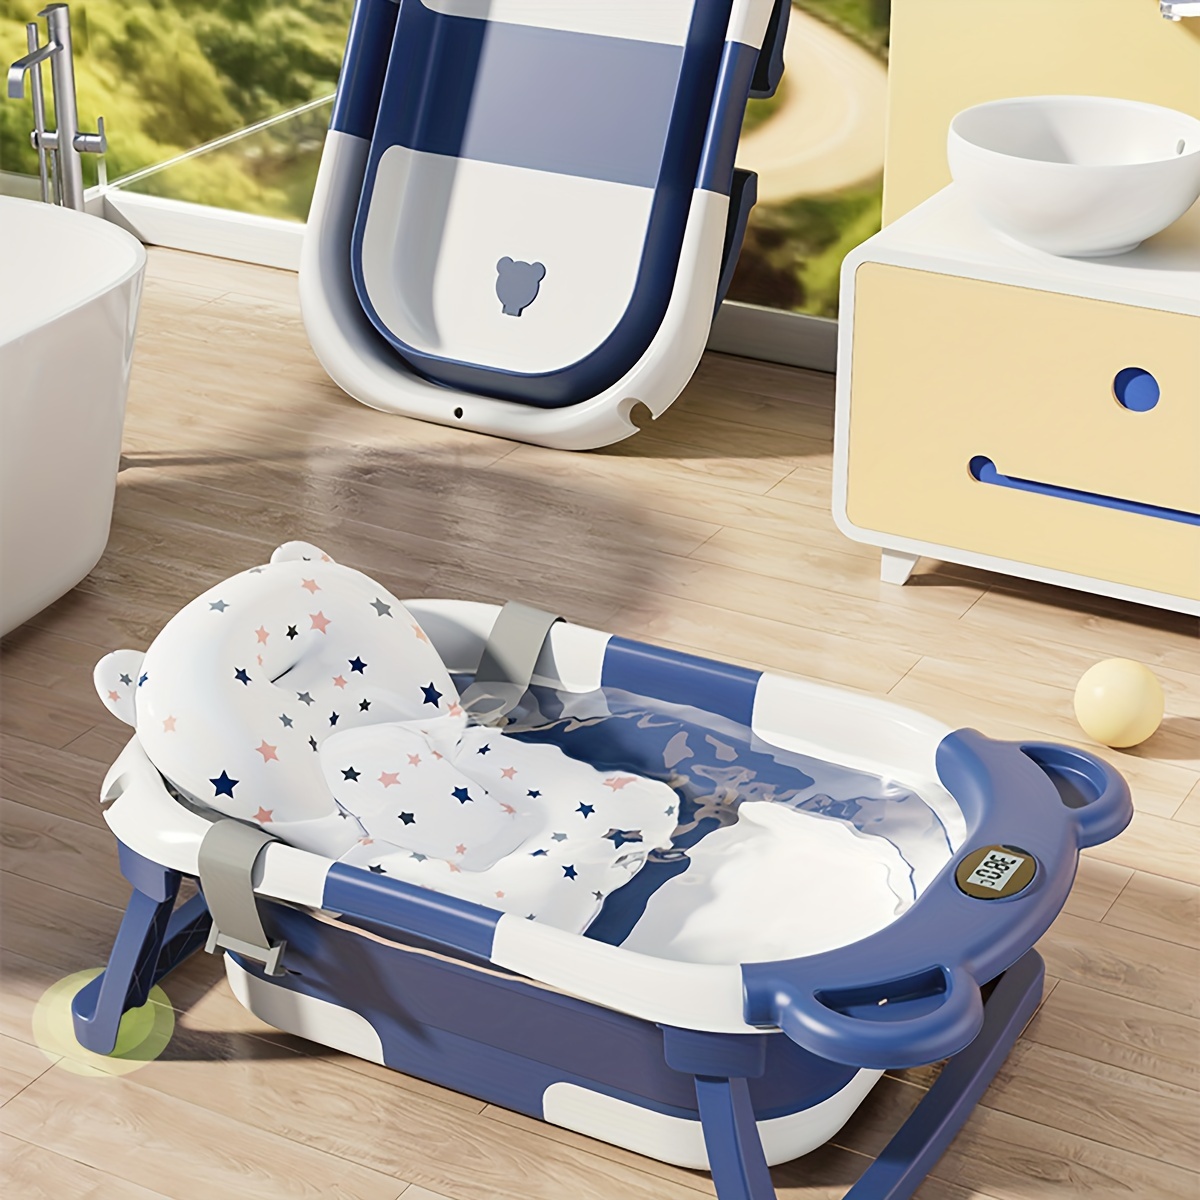 Bañera plegable para bebé recién nacido con termómetro y 1 cojín flotante  suave y 1 red de baño, bañera de viaje portátil con orificio de drenaje